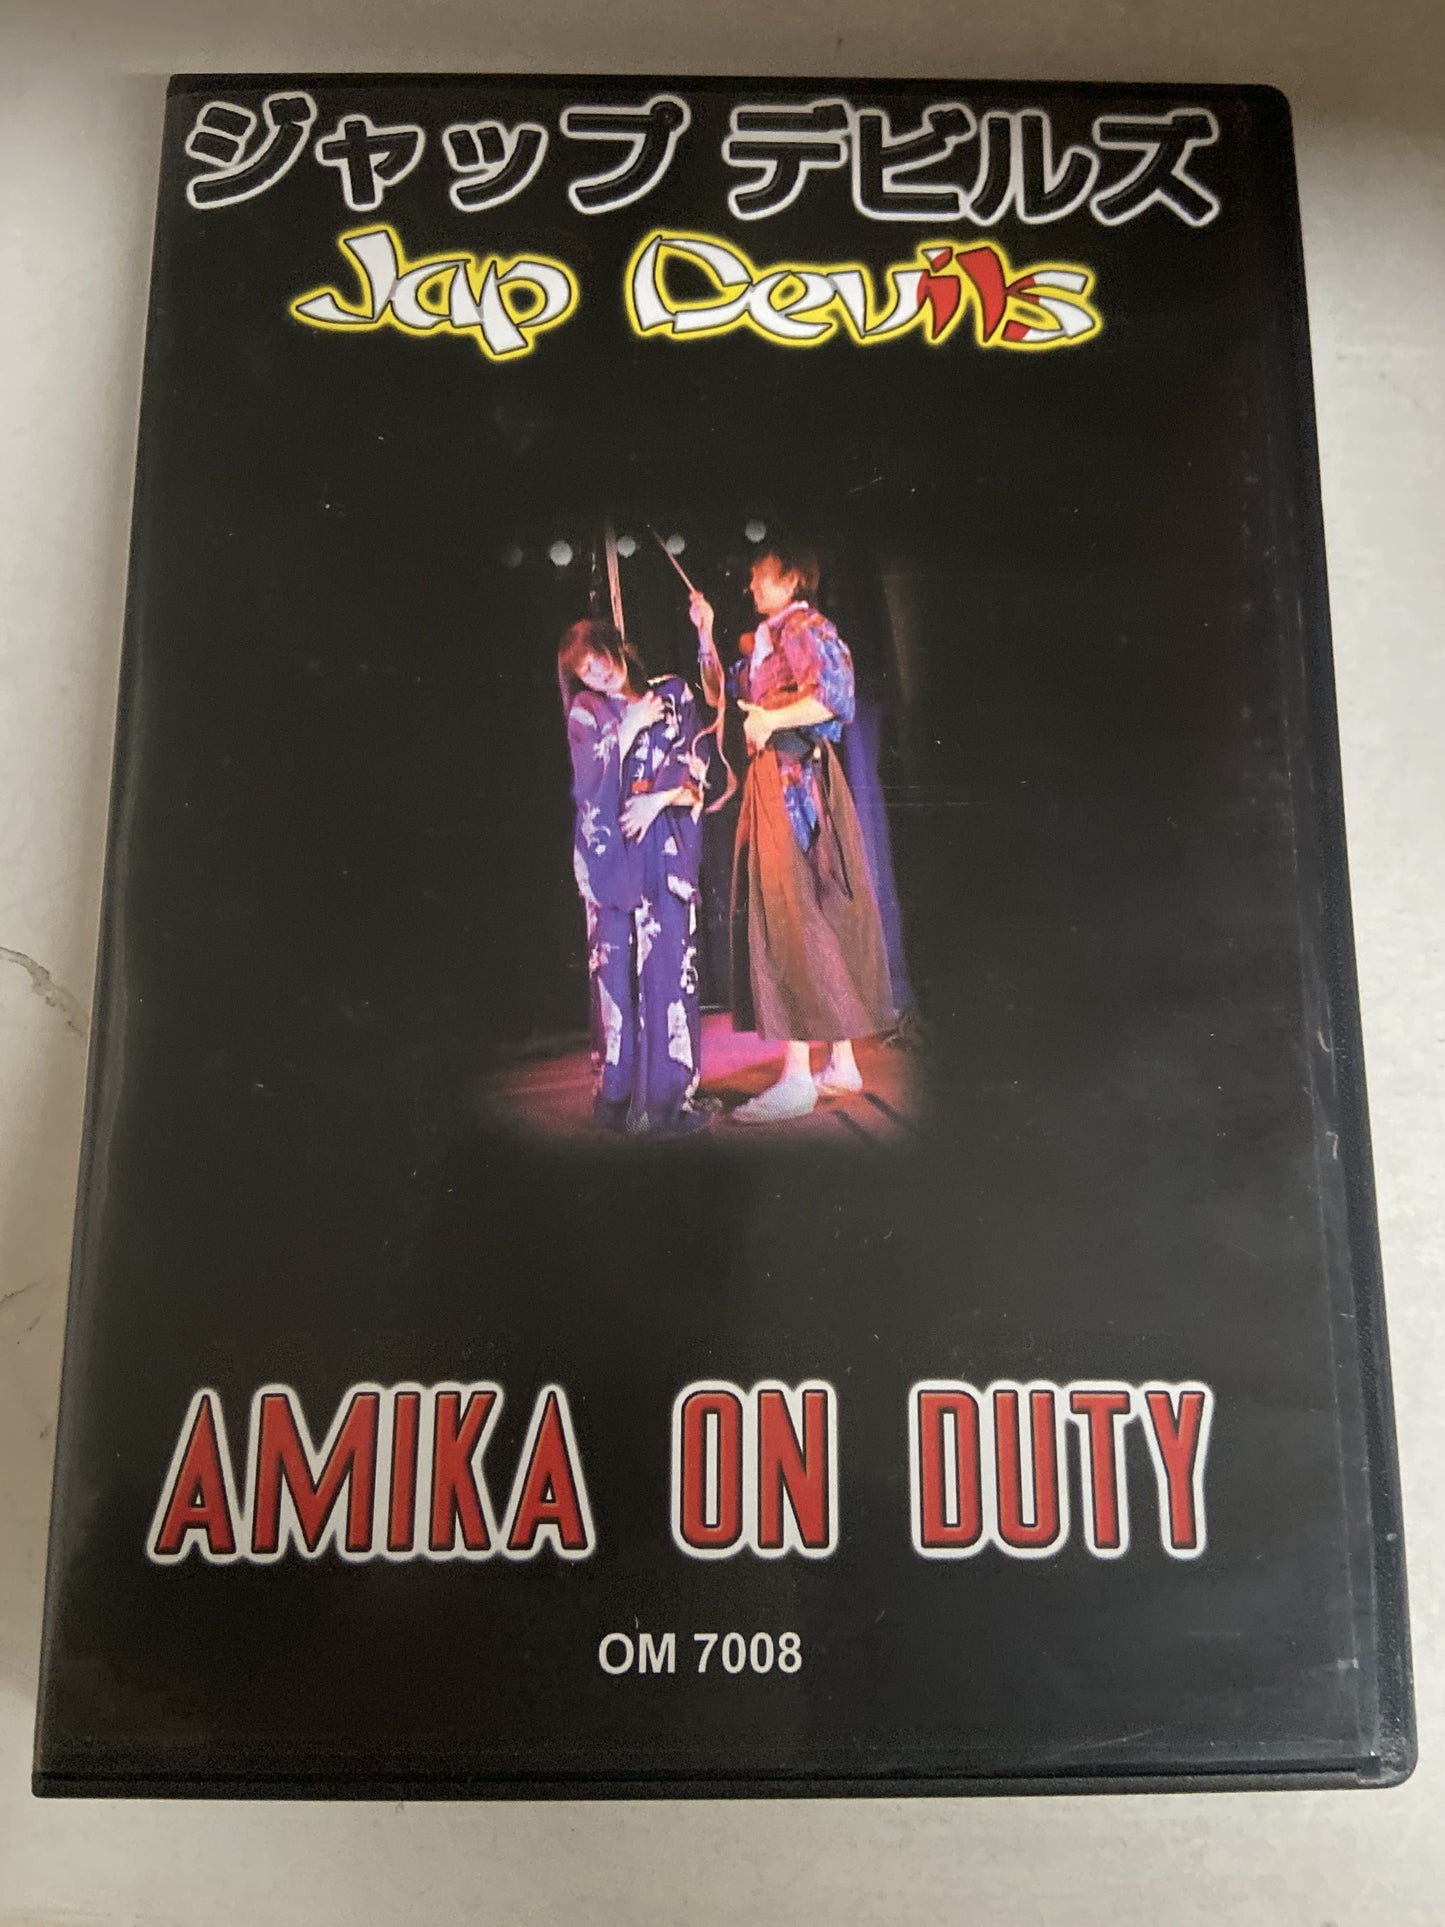 DVD Jap Devils - 9 TItles Pack Japanese Extreme